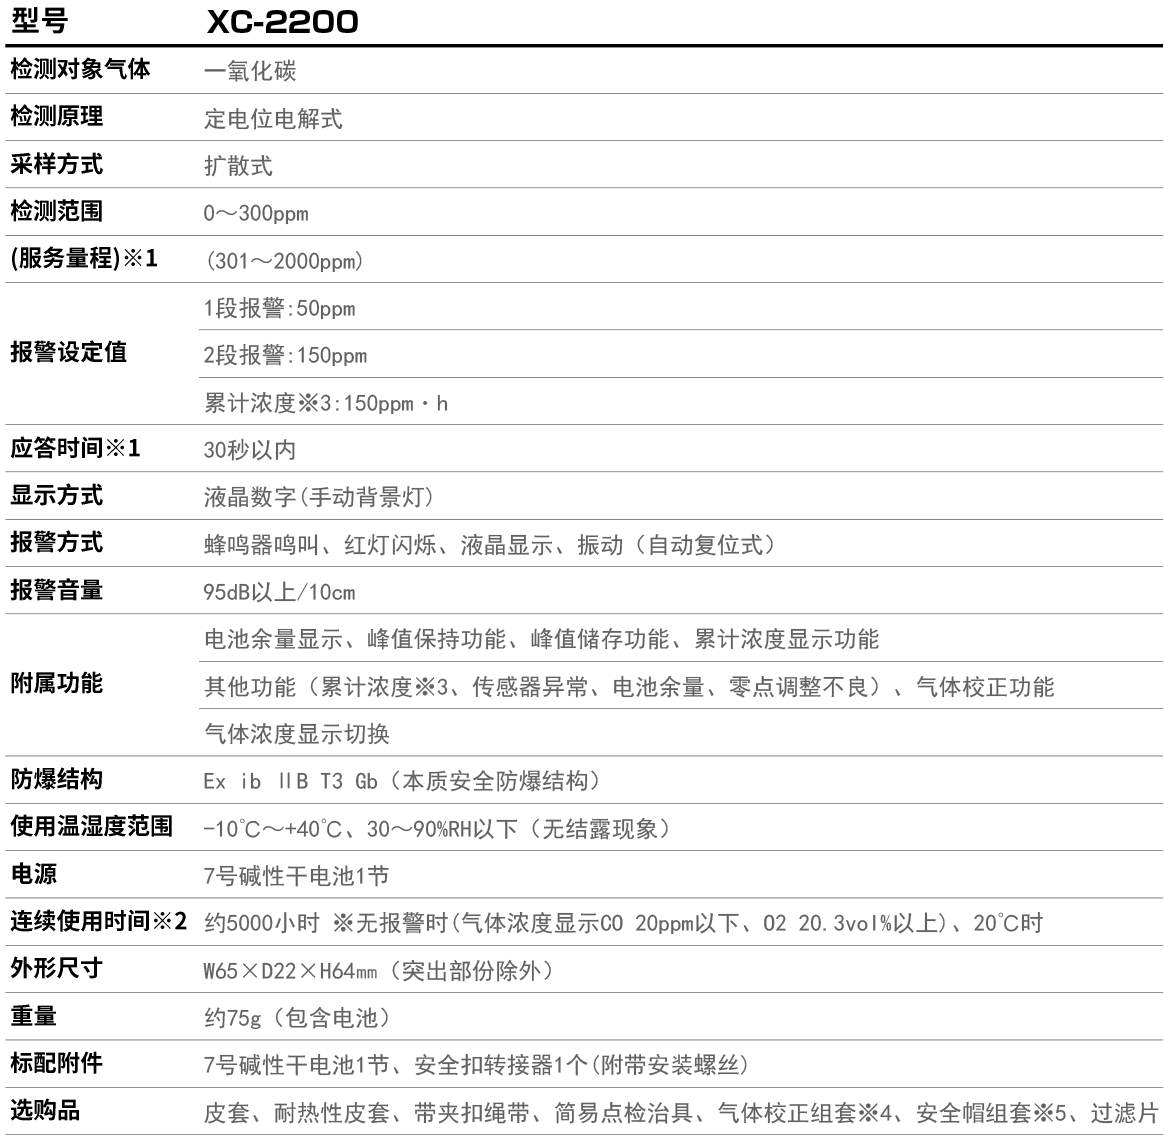 XC-2200产品参数.jpg